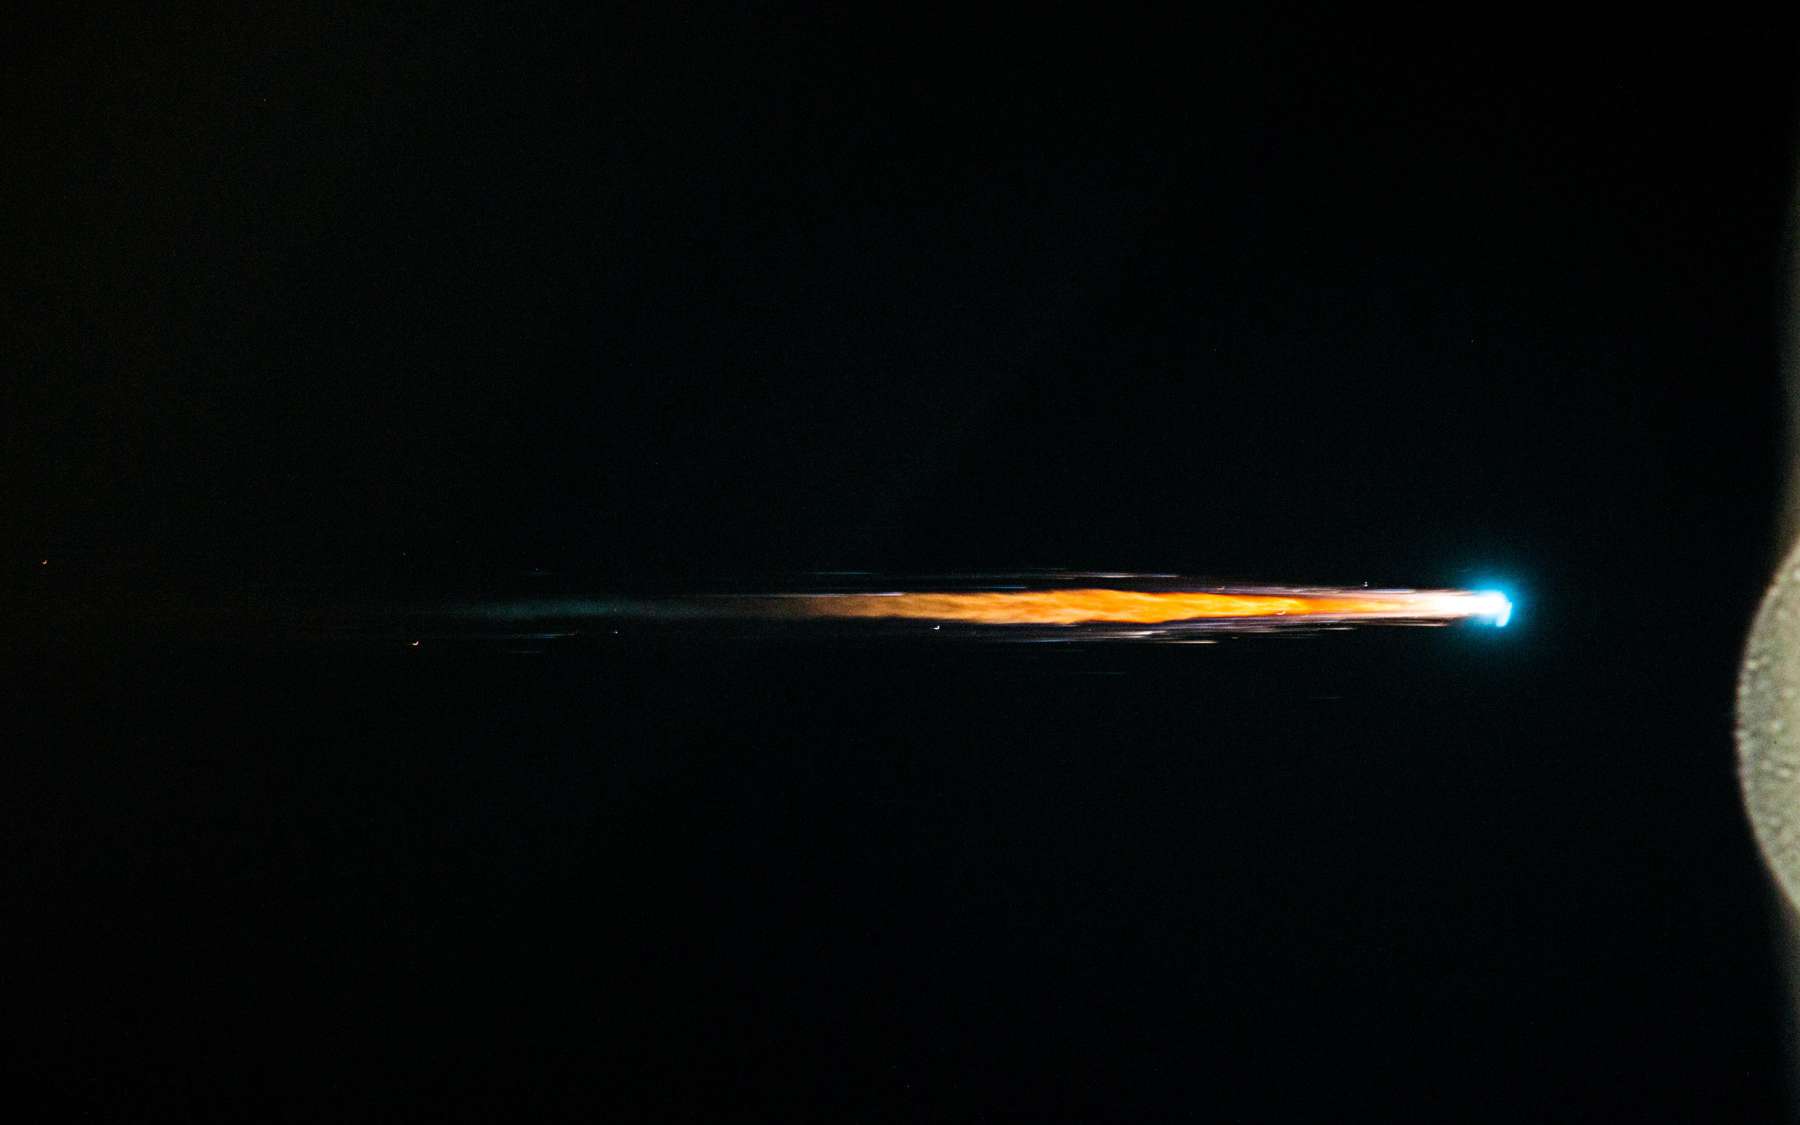 Rentrée dans l'atmosphère terrestre de l'ATV-4 Albert Einstein, photographiée par les astronautes à bord de la Station spatiale internationale. © Esa, Nasa